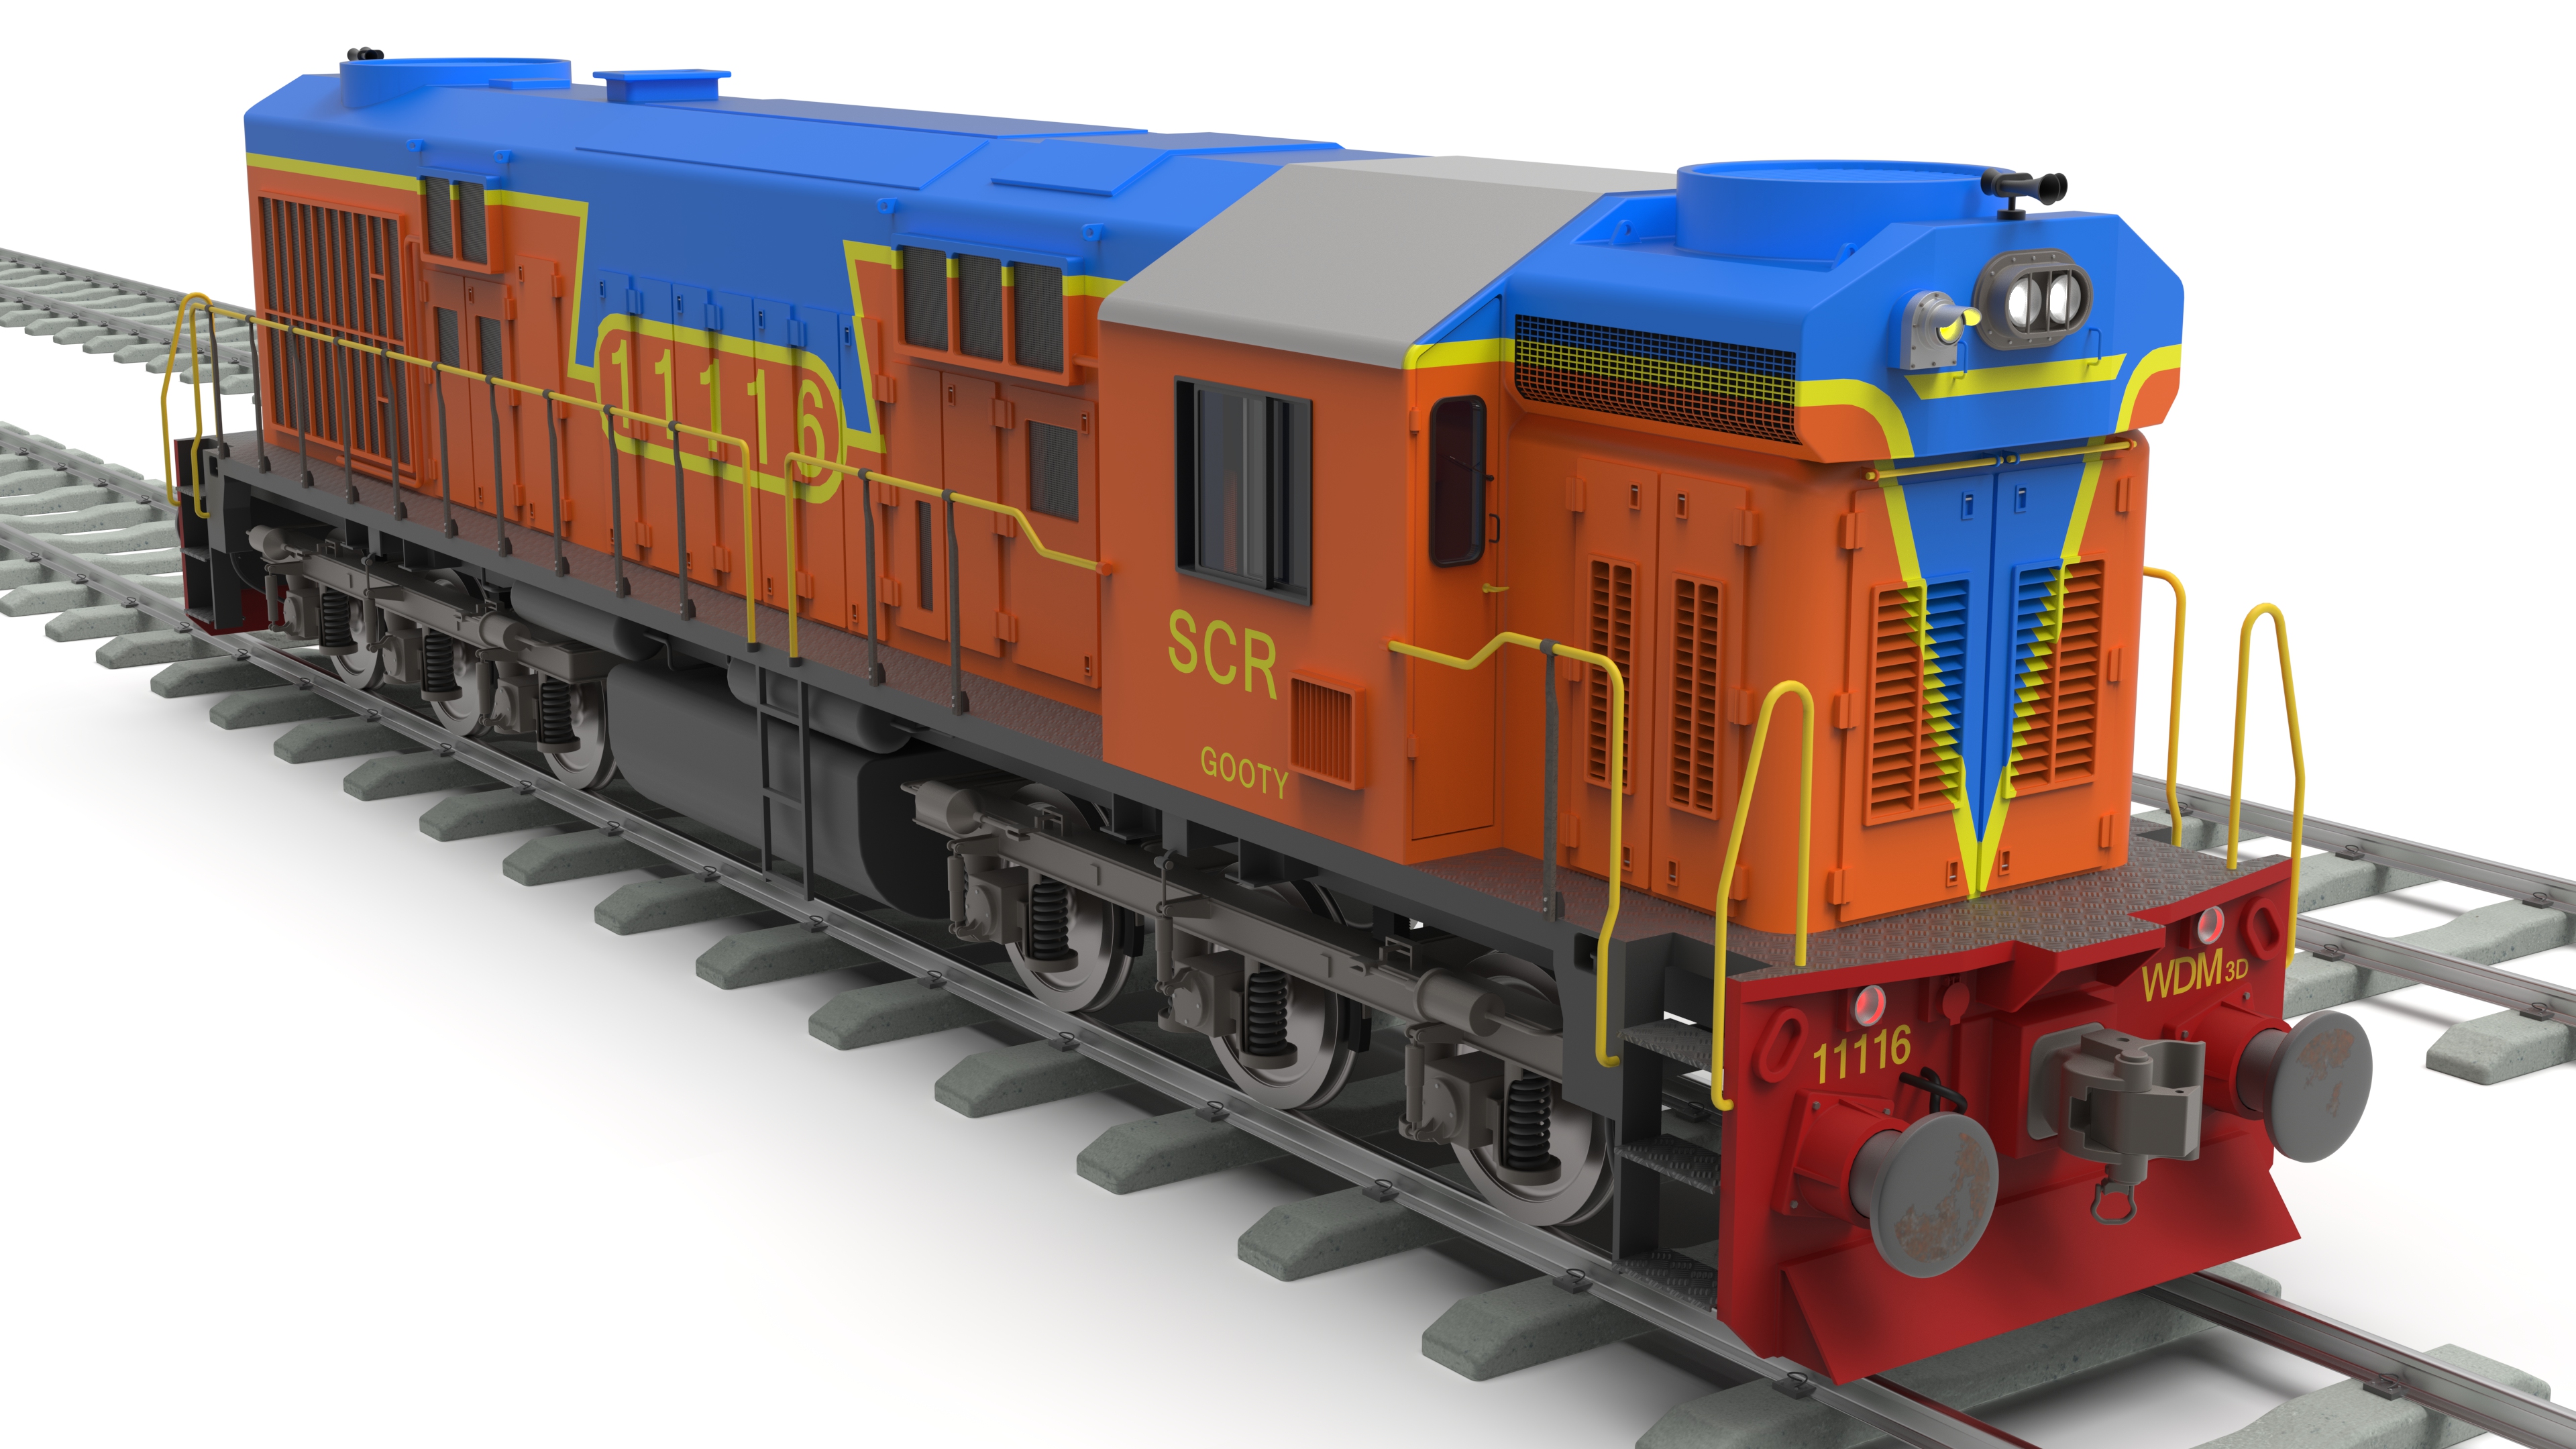 Locomotive engine